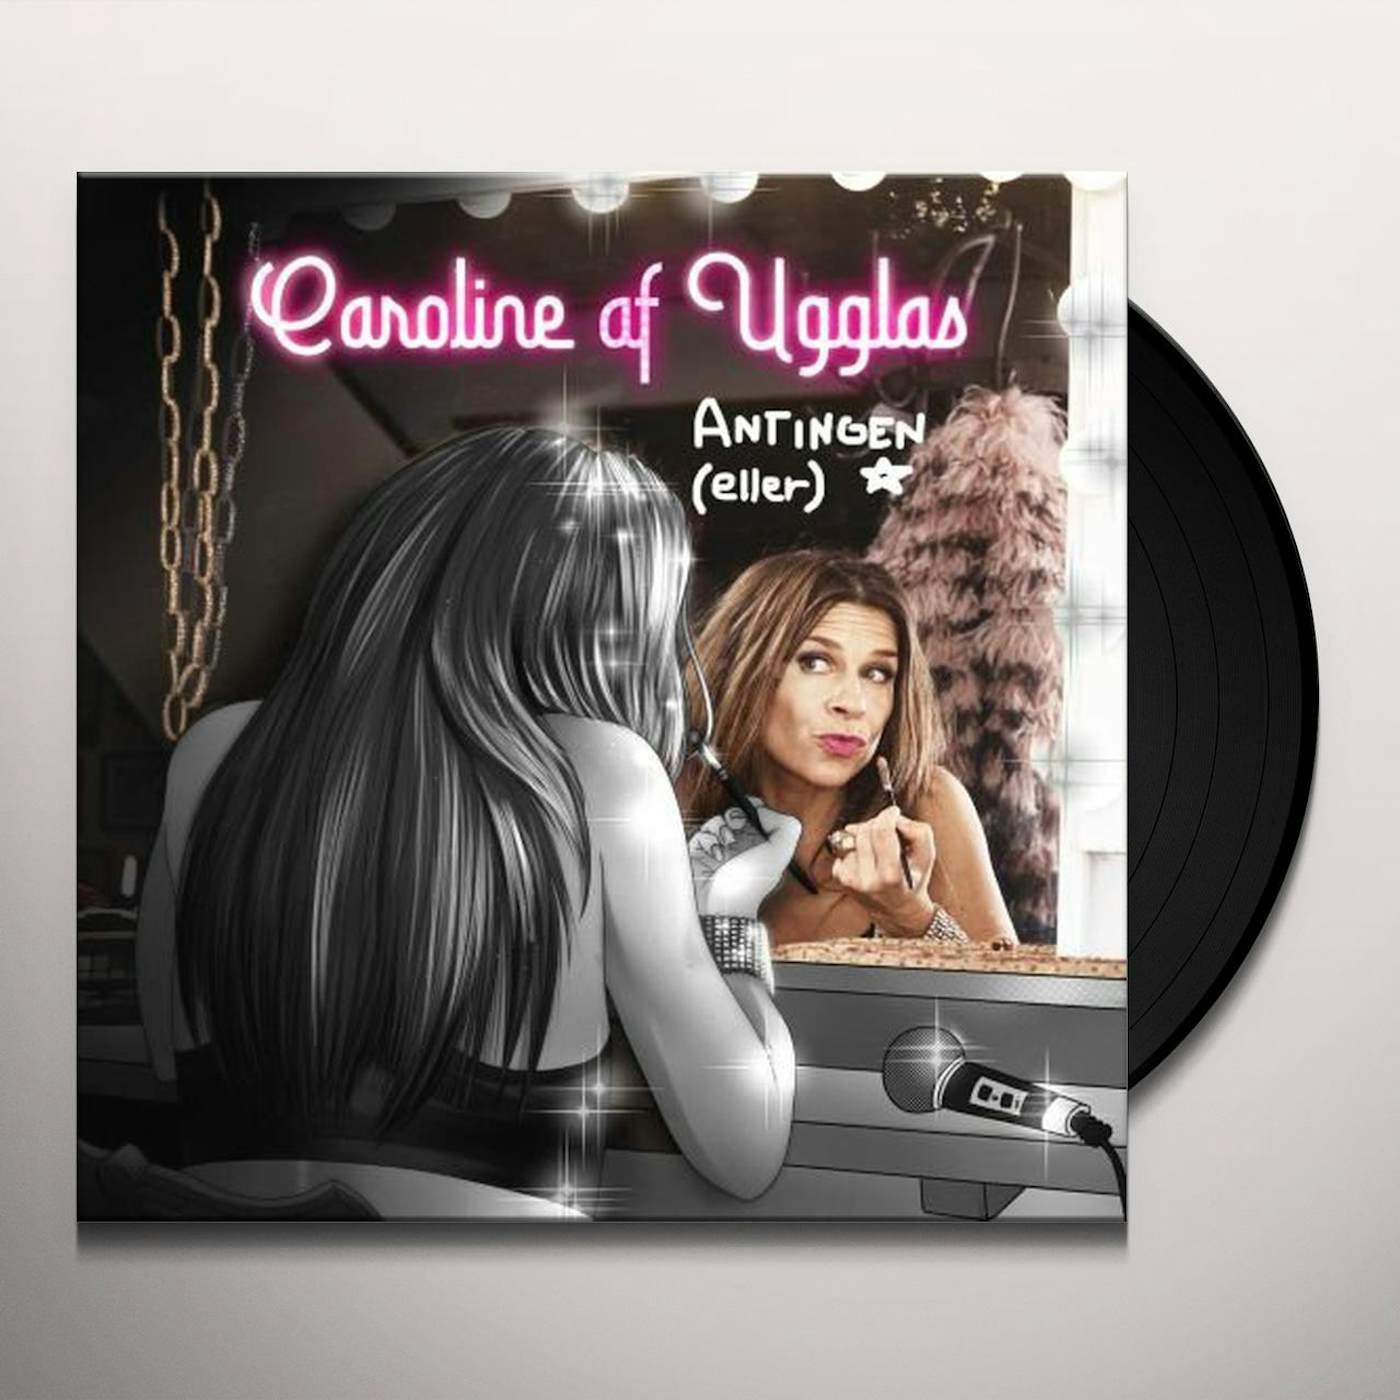 Caroline af Ugglas Antingen eller Vinyl Record